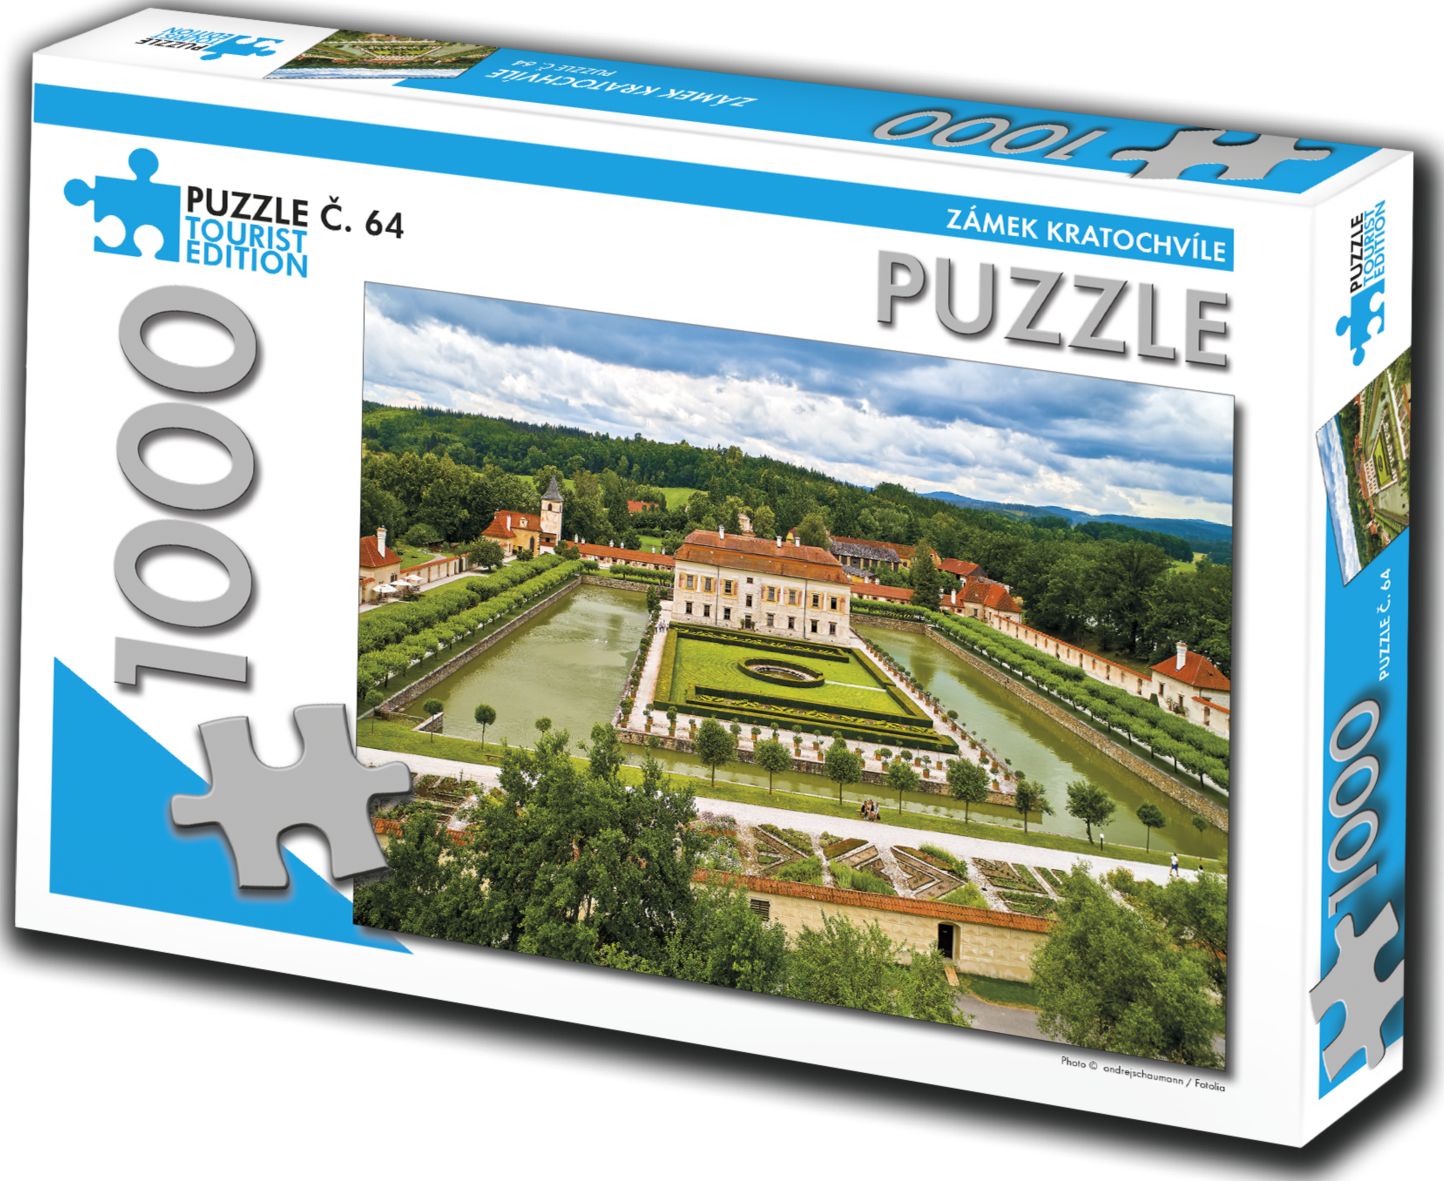 TOURIST EDITION Puzzle Zámek Kratochvíle 1000 dílků (č.64) - obrázek 1